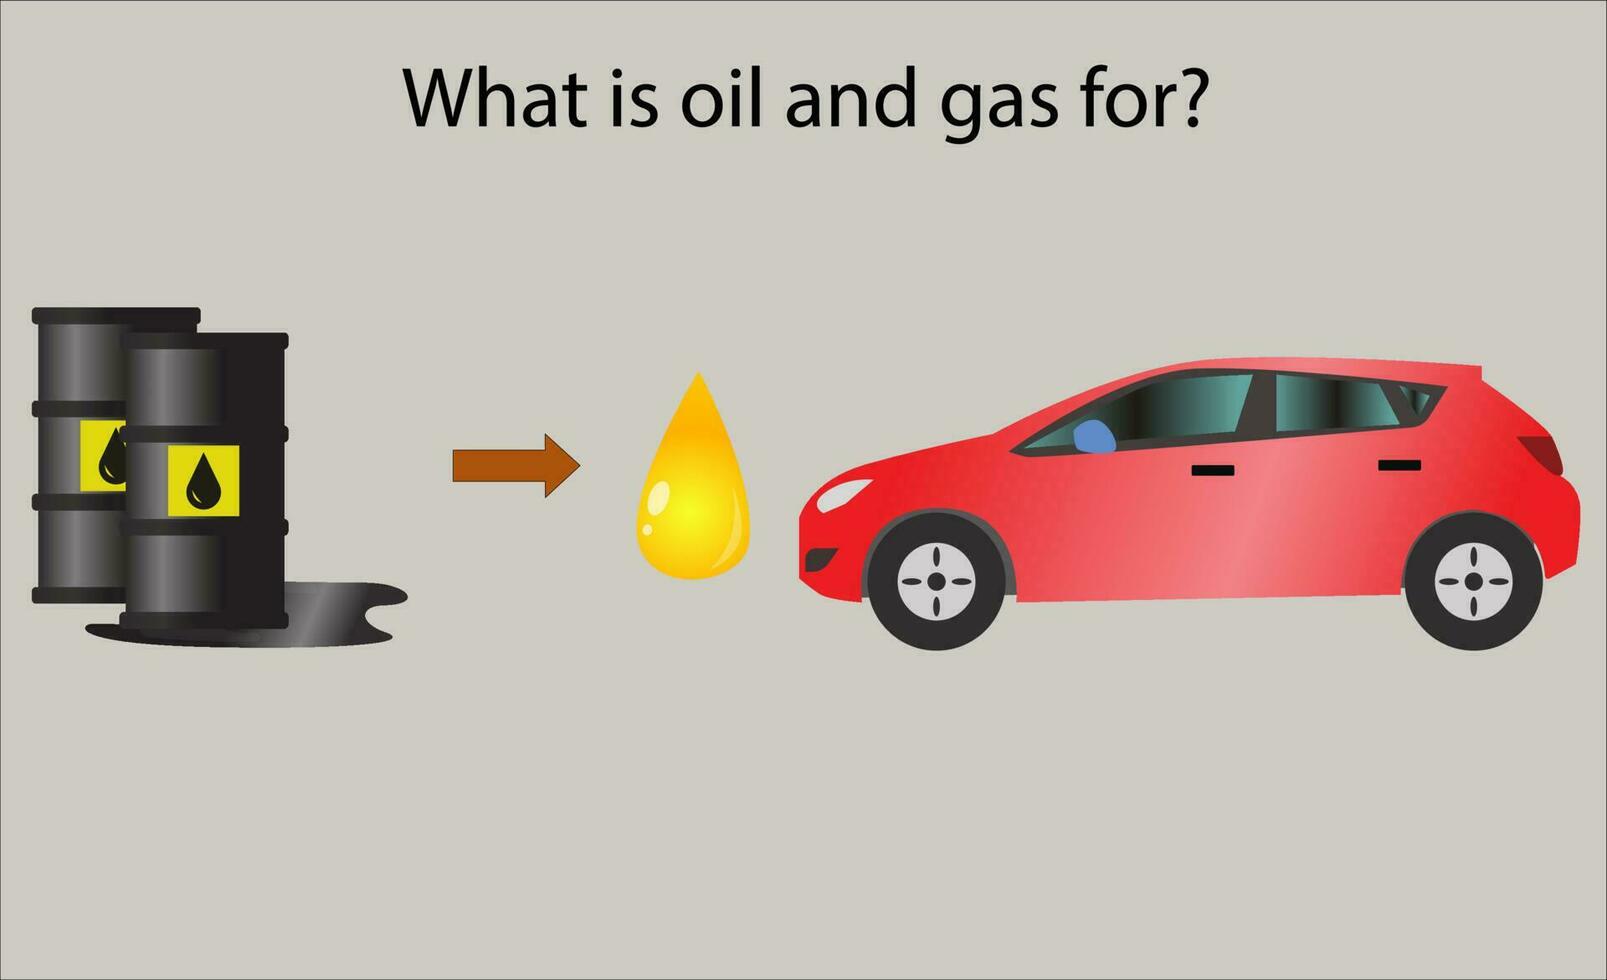 formación de petróleo y gas vector ilustración, qué petróleo y gas para infografía diseño, petróleo extracción desde geológico capas ilustración, petróleo proceso